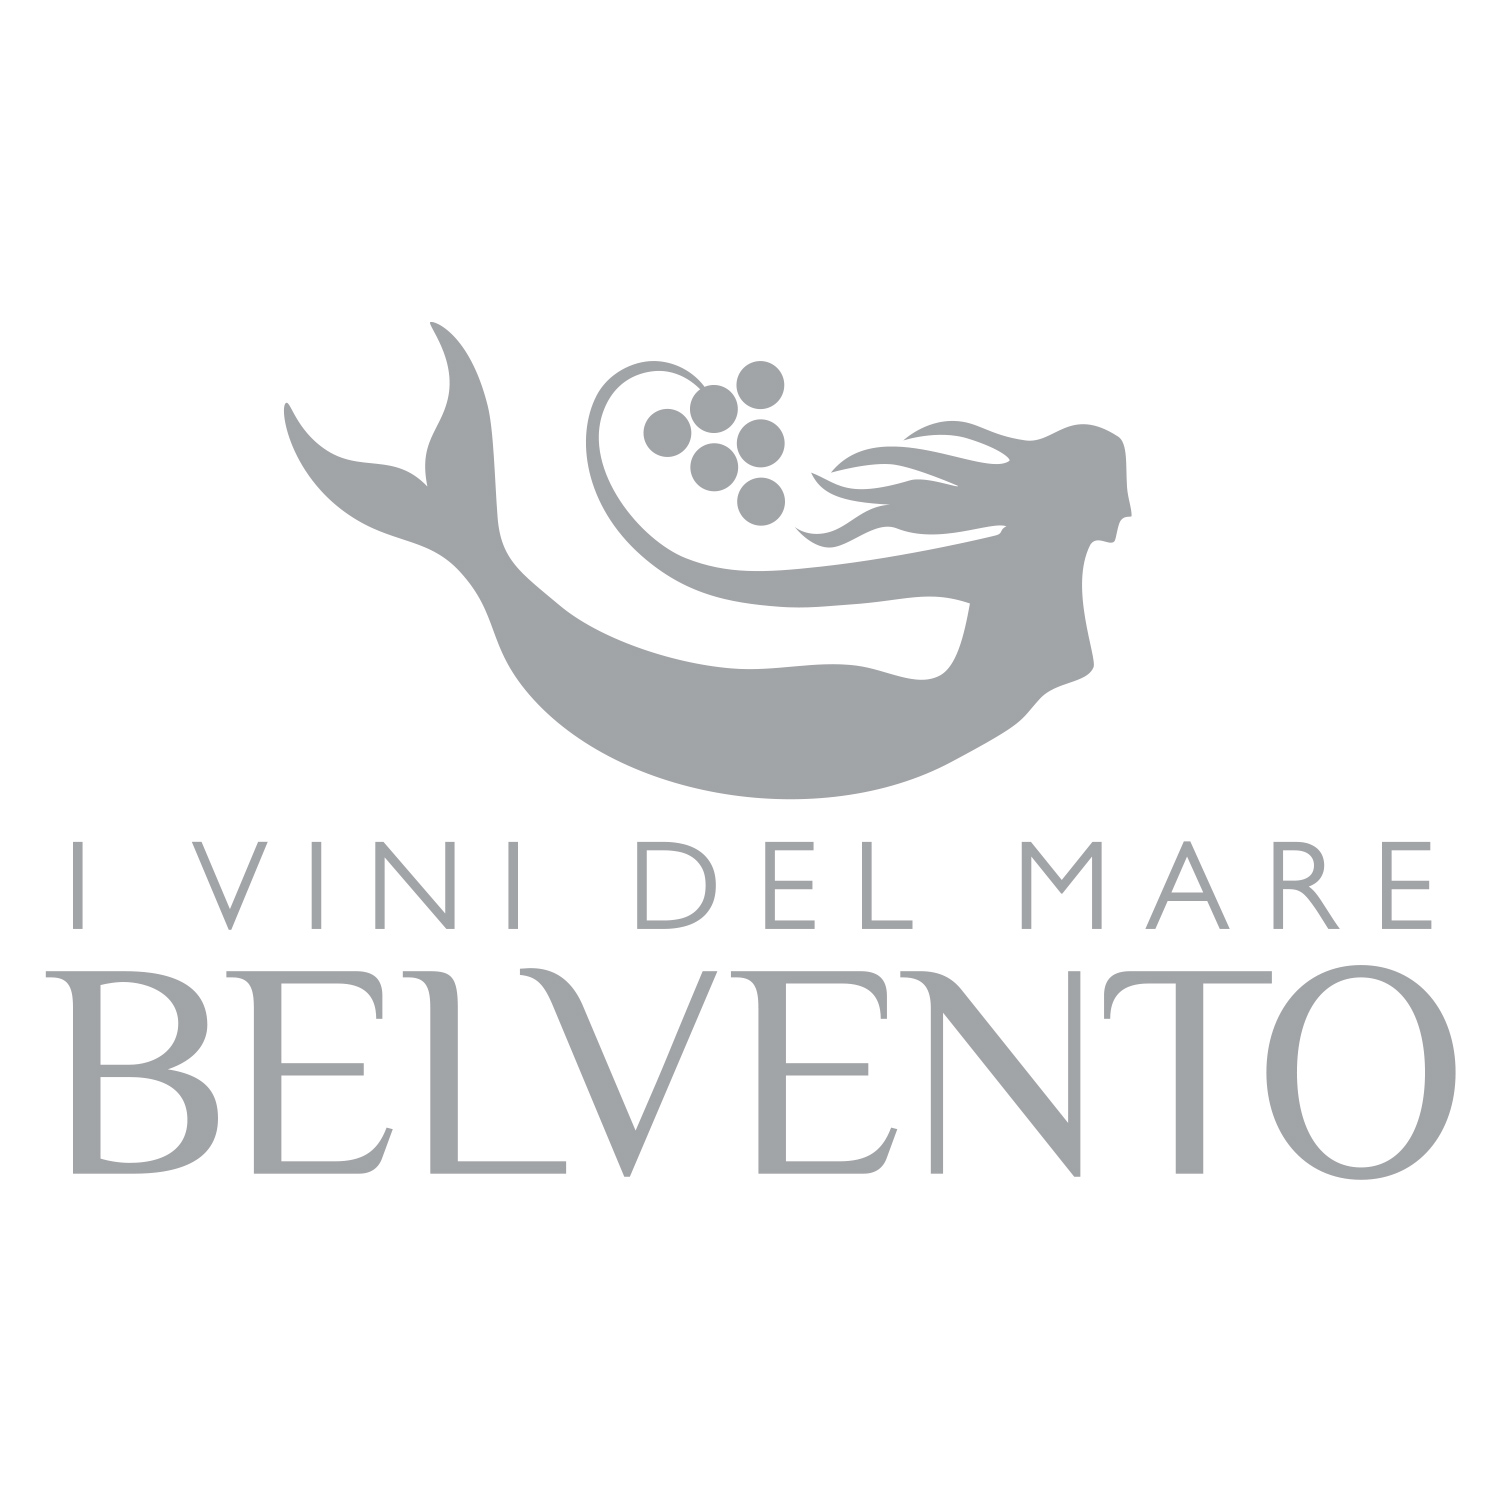 Logo_TMW_1500x1500px_Belvento.jpg